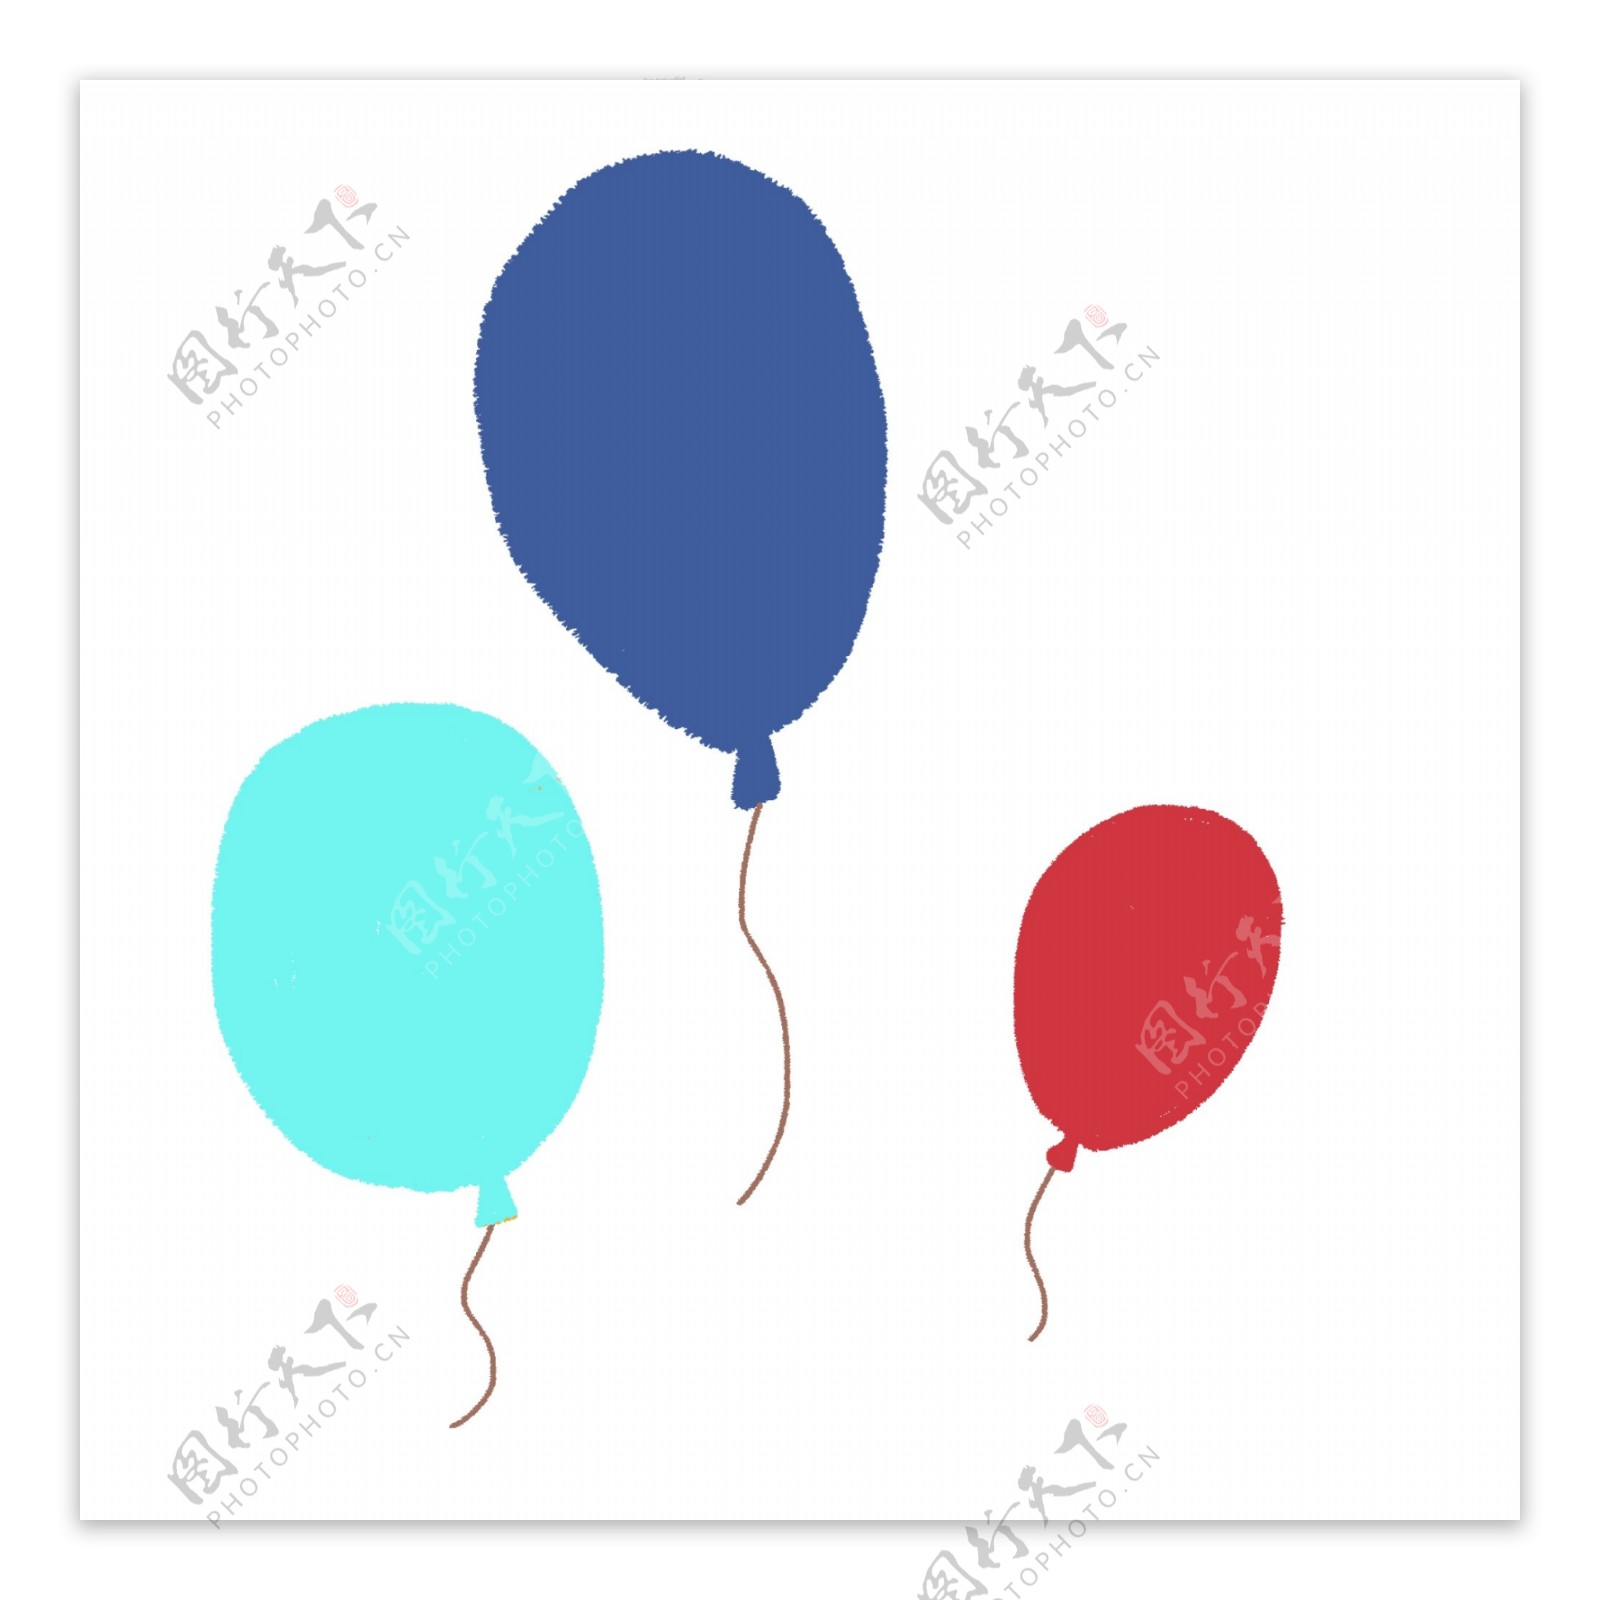 彩色创意气球漂浮元素